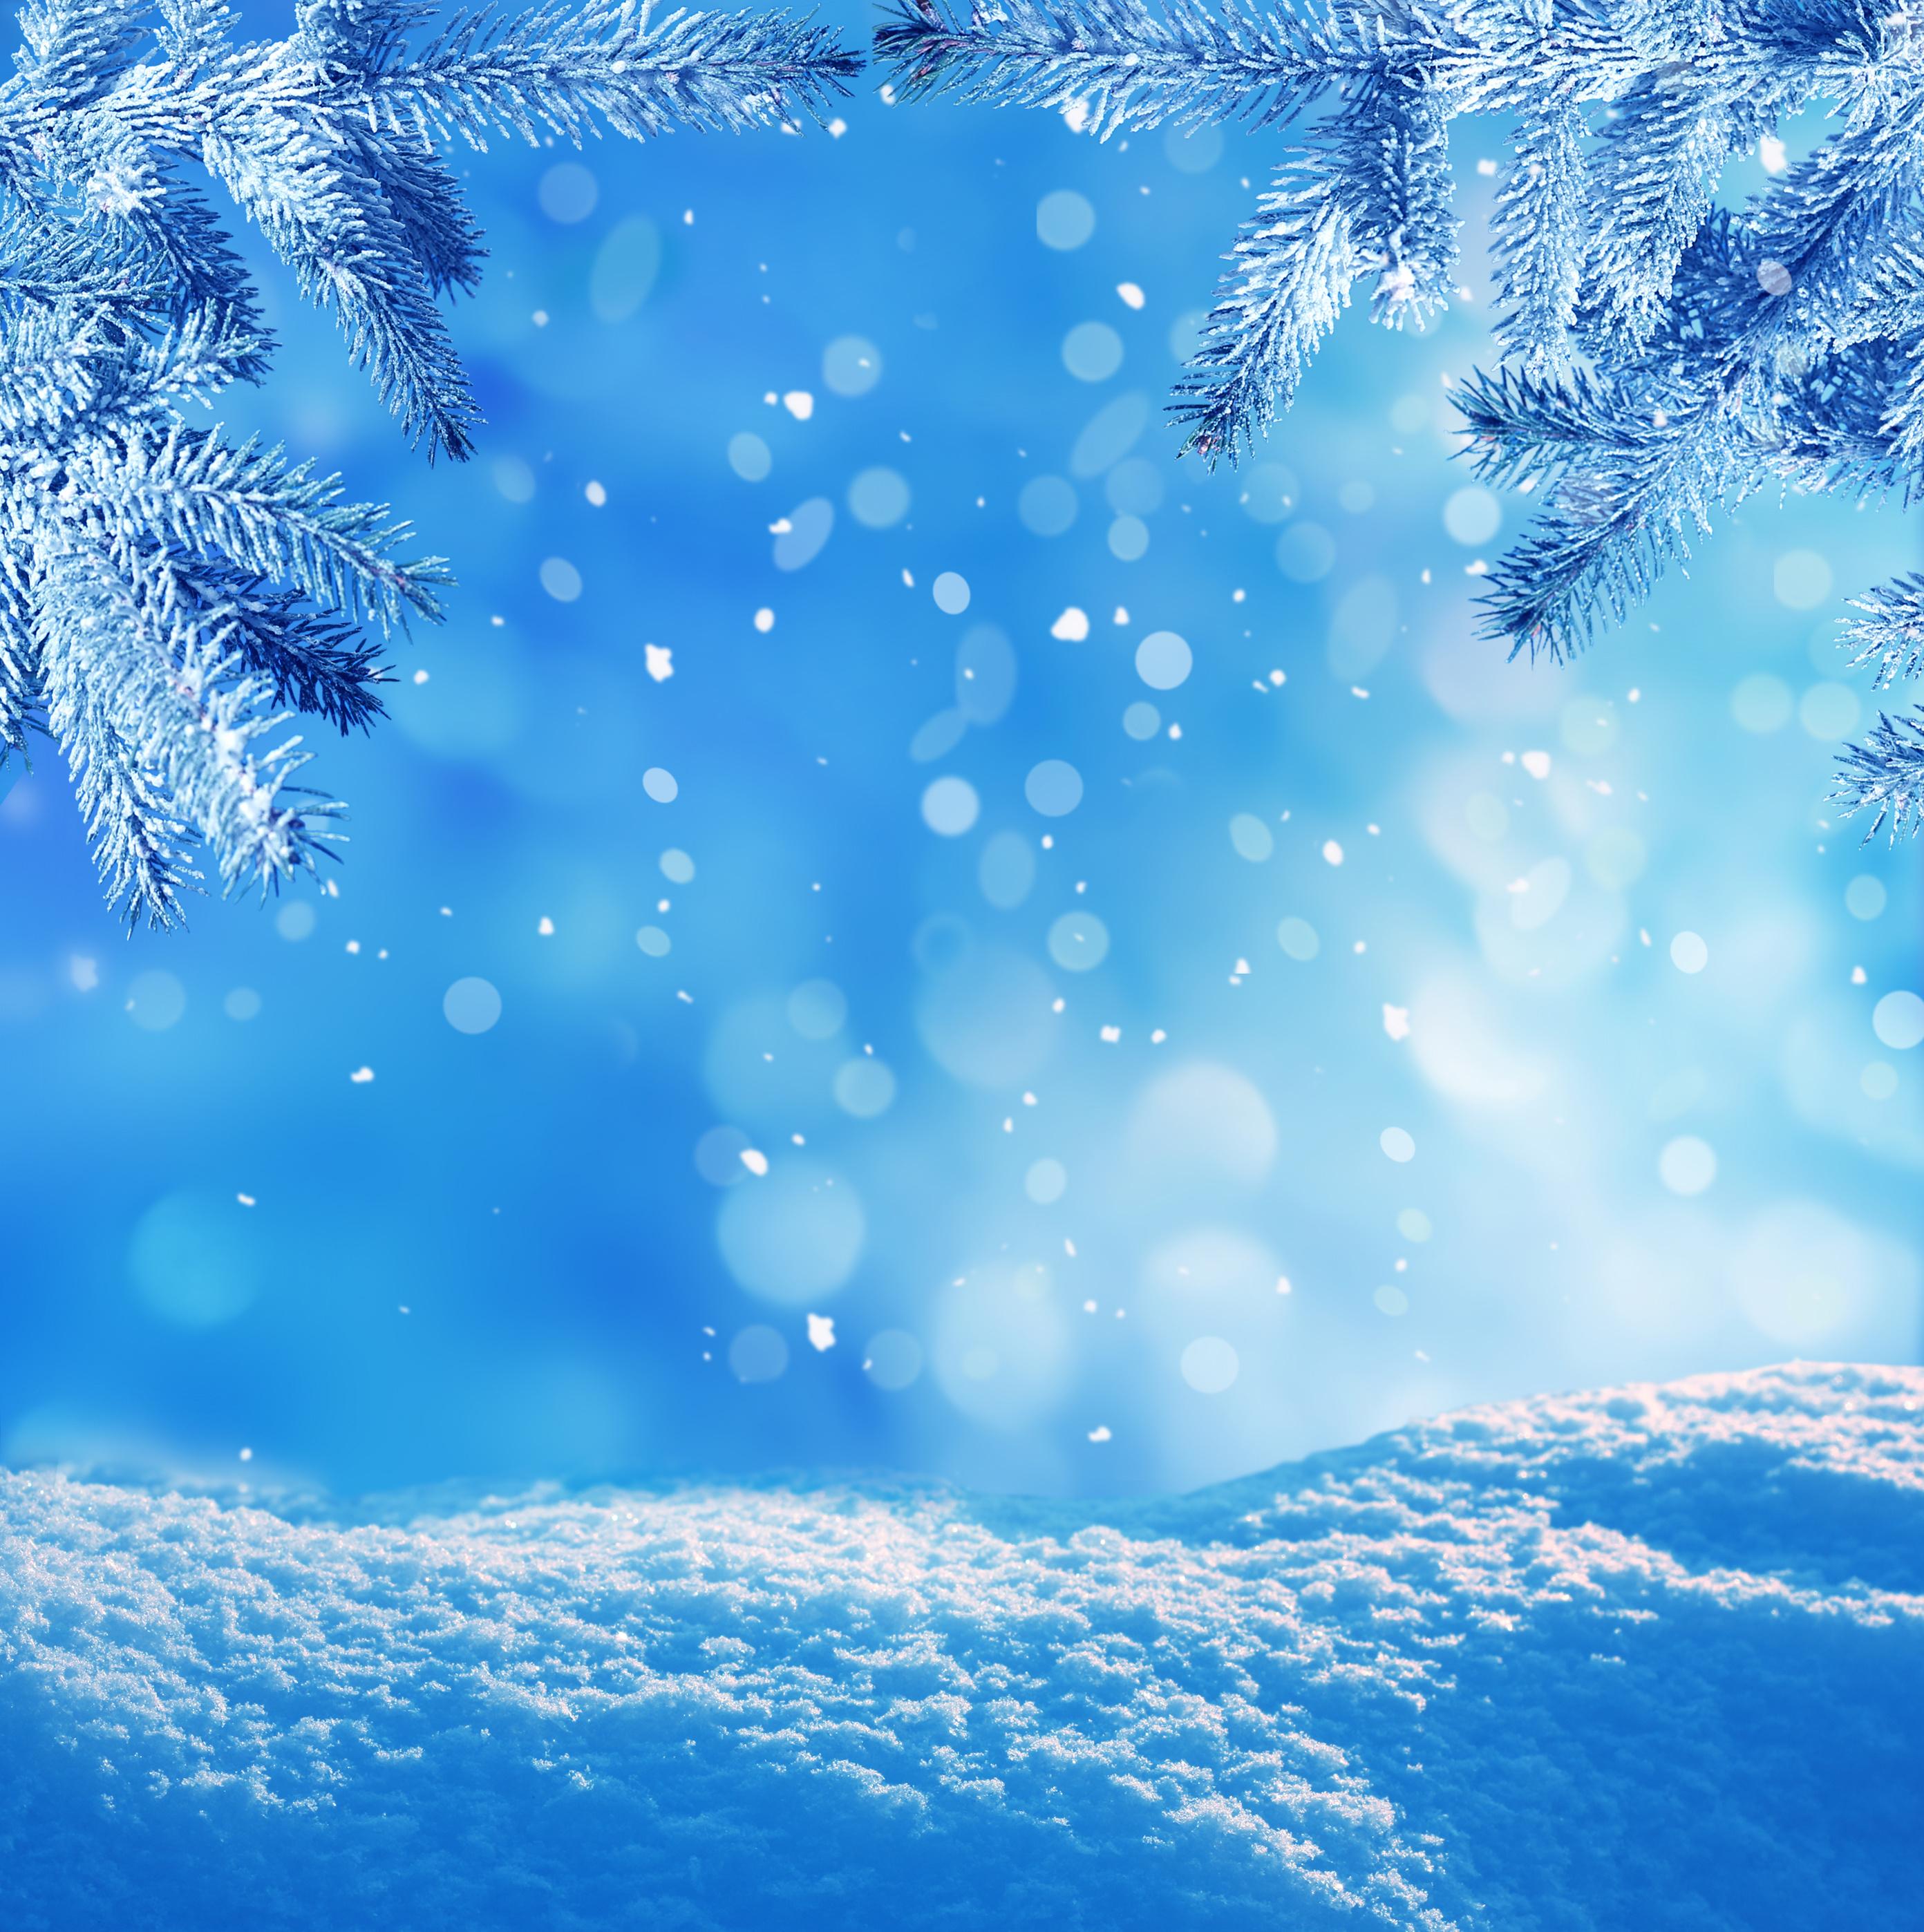 Абстрактные зимние фоны | Winter abstract background. Сhristmas landscape -  2 (30 файлов) » Векторные клипарты, текстурные фоны, бекграунды, AI, EPS,  SVG